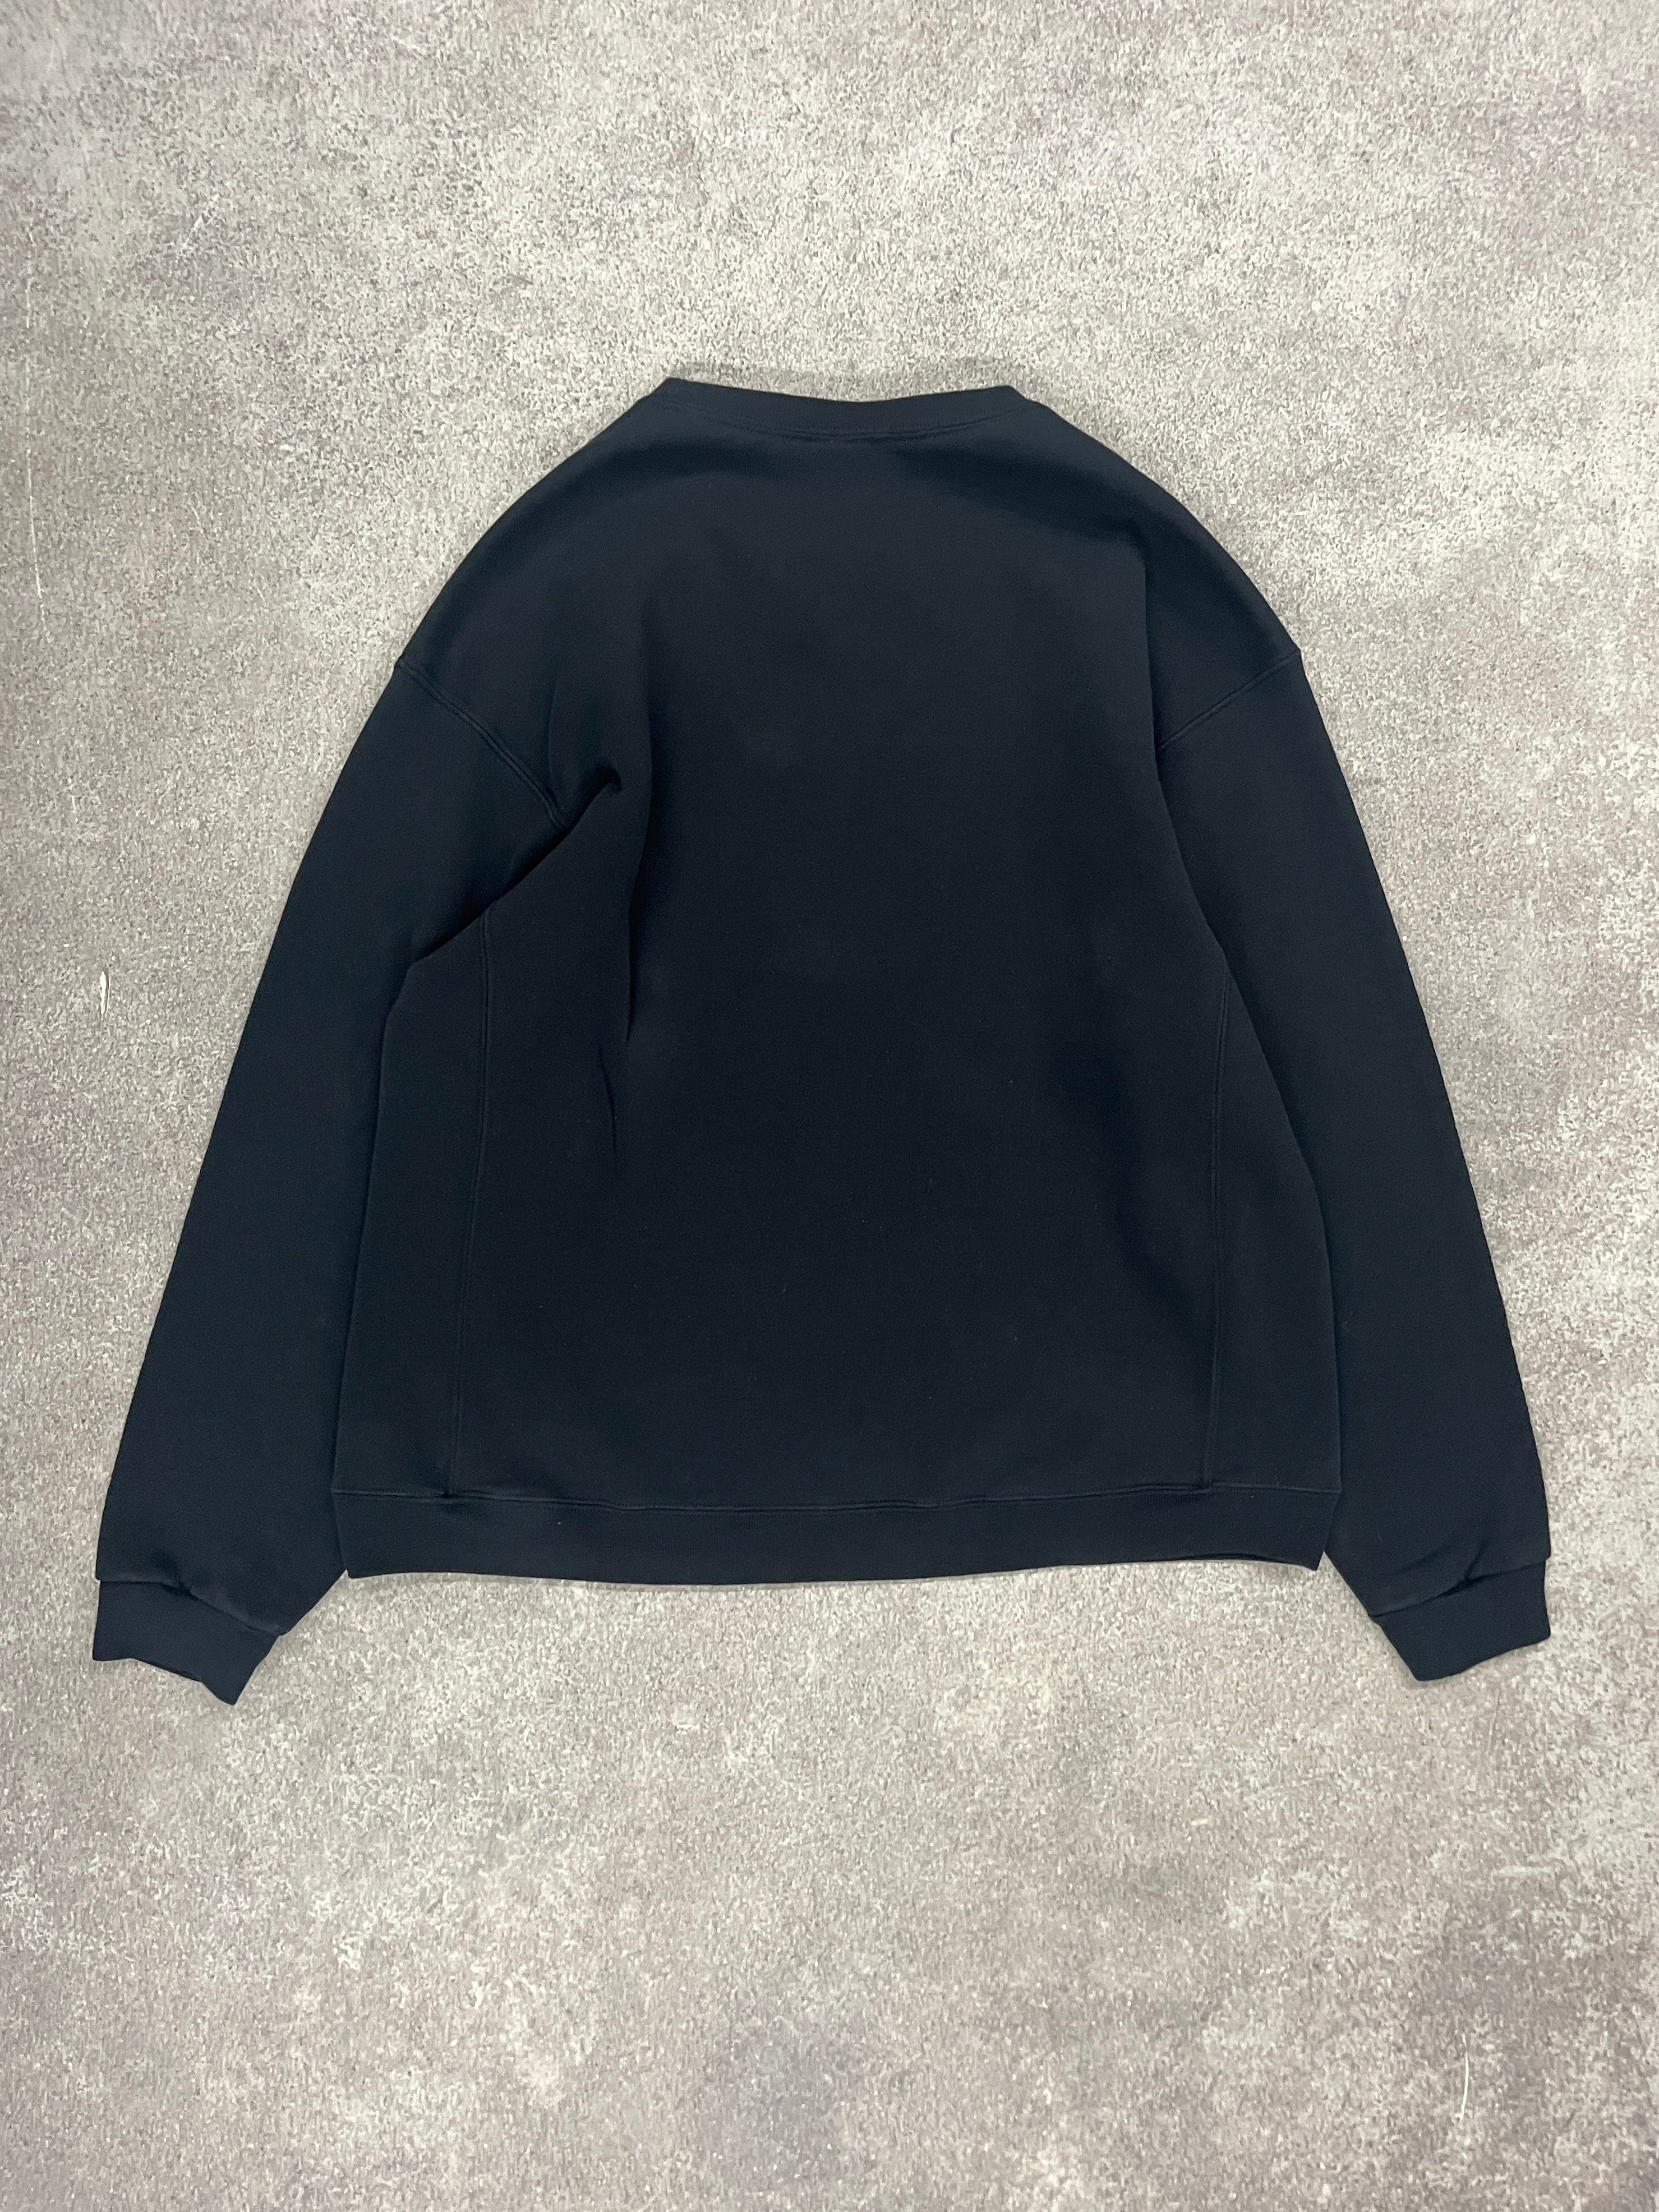 1 Vintage Sweater Grey // Large - RHAGHOUSE VINTAGE